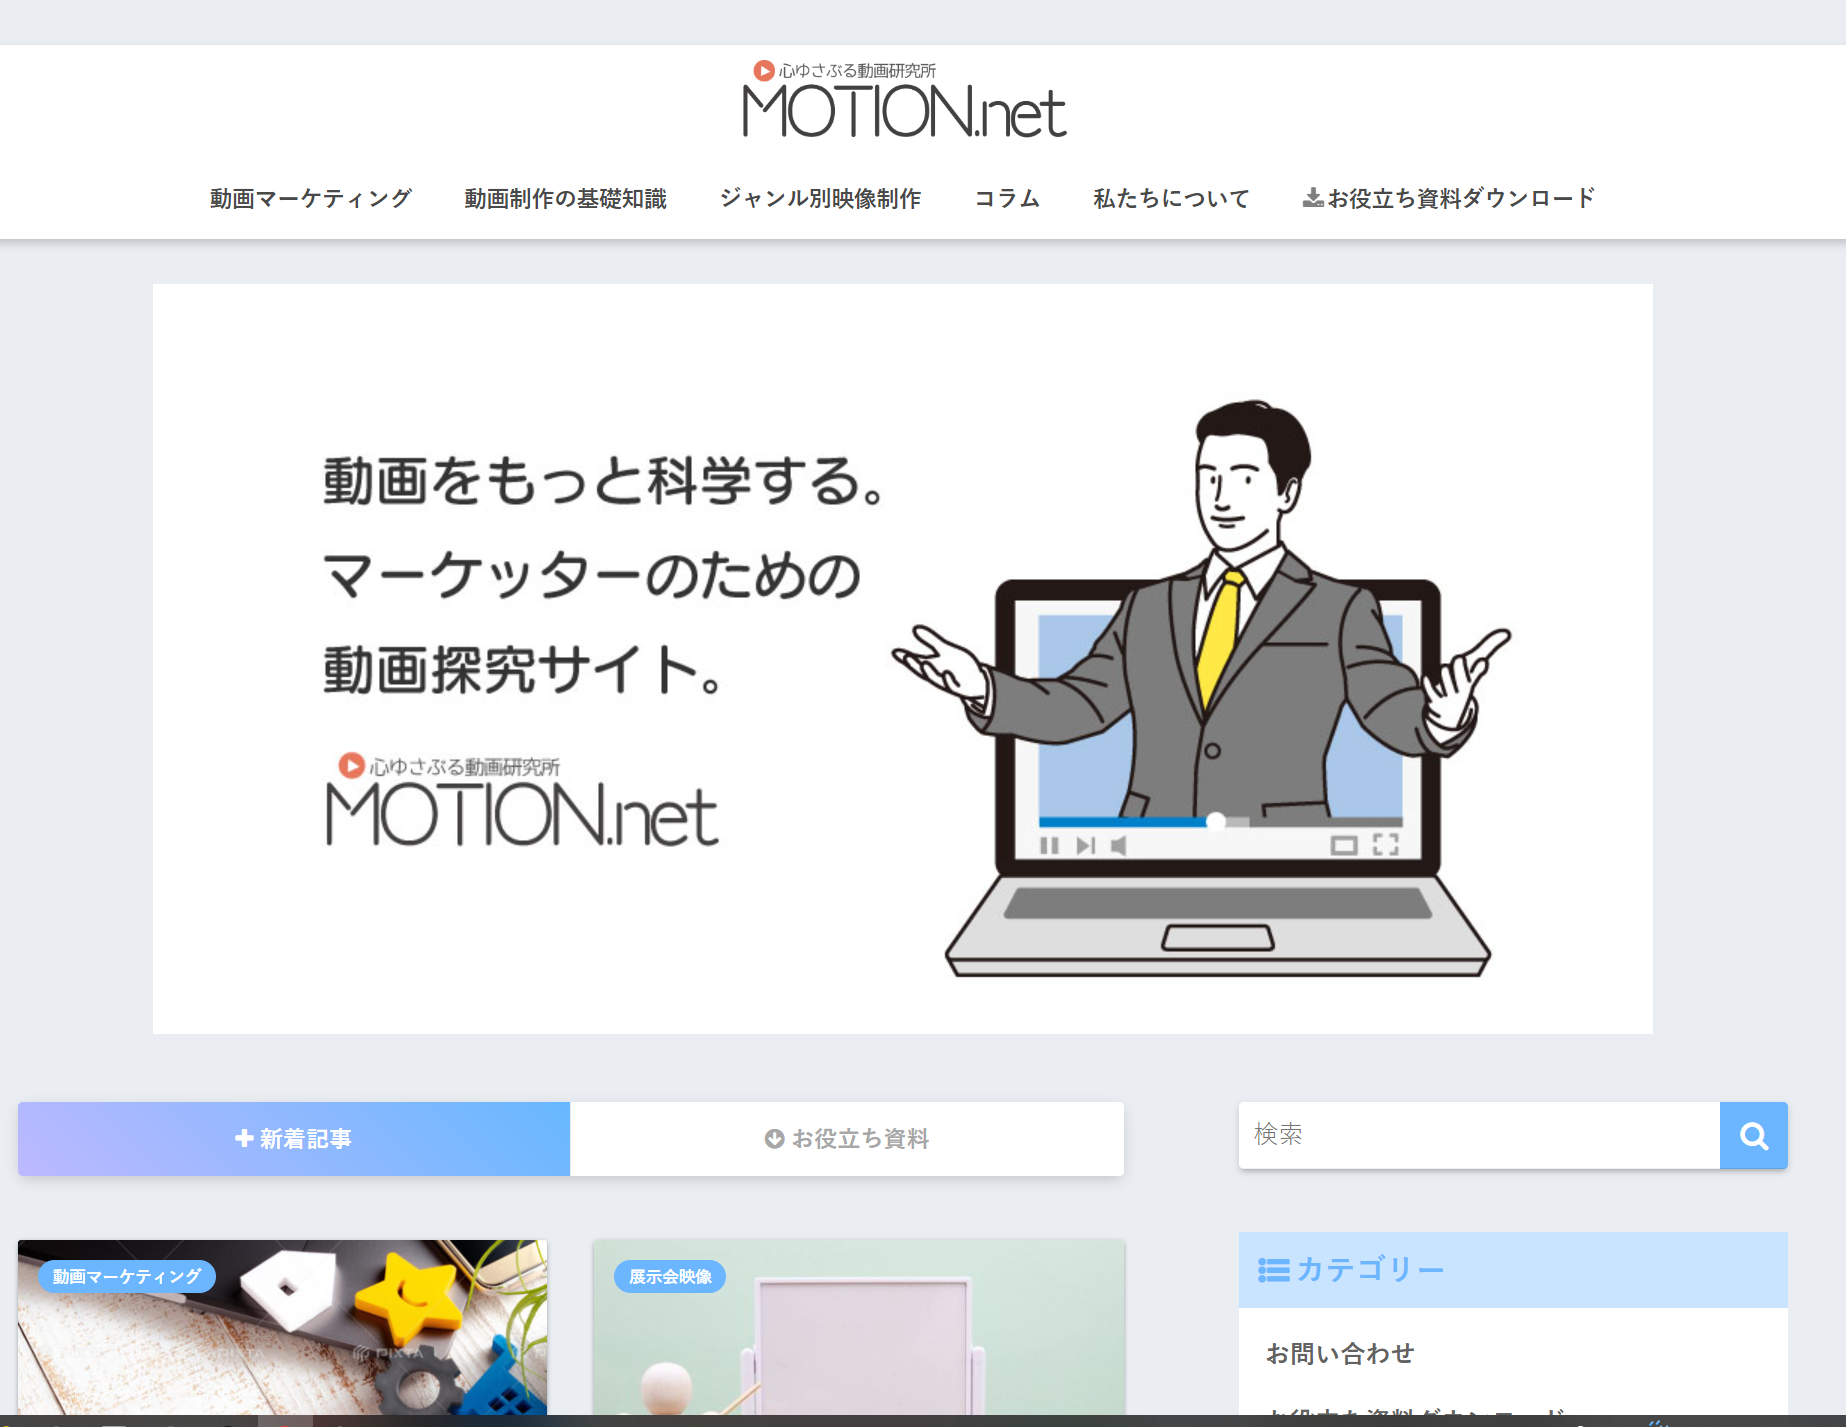 MOTION.net